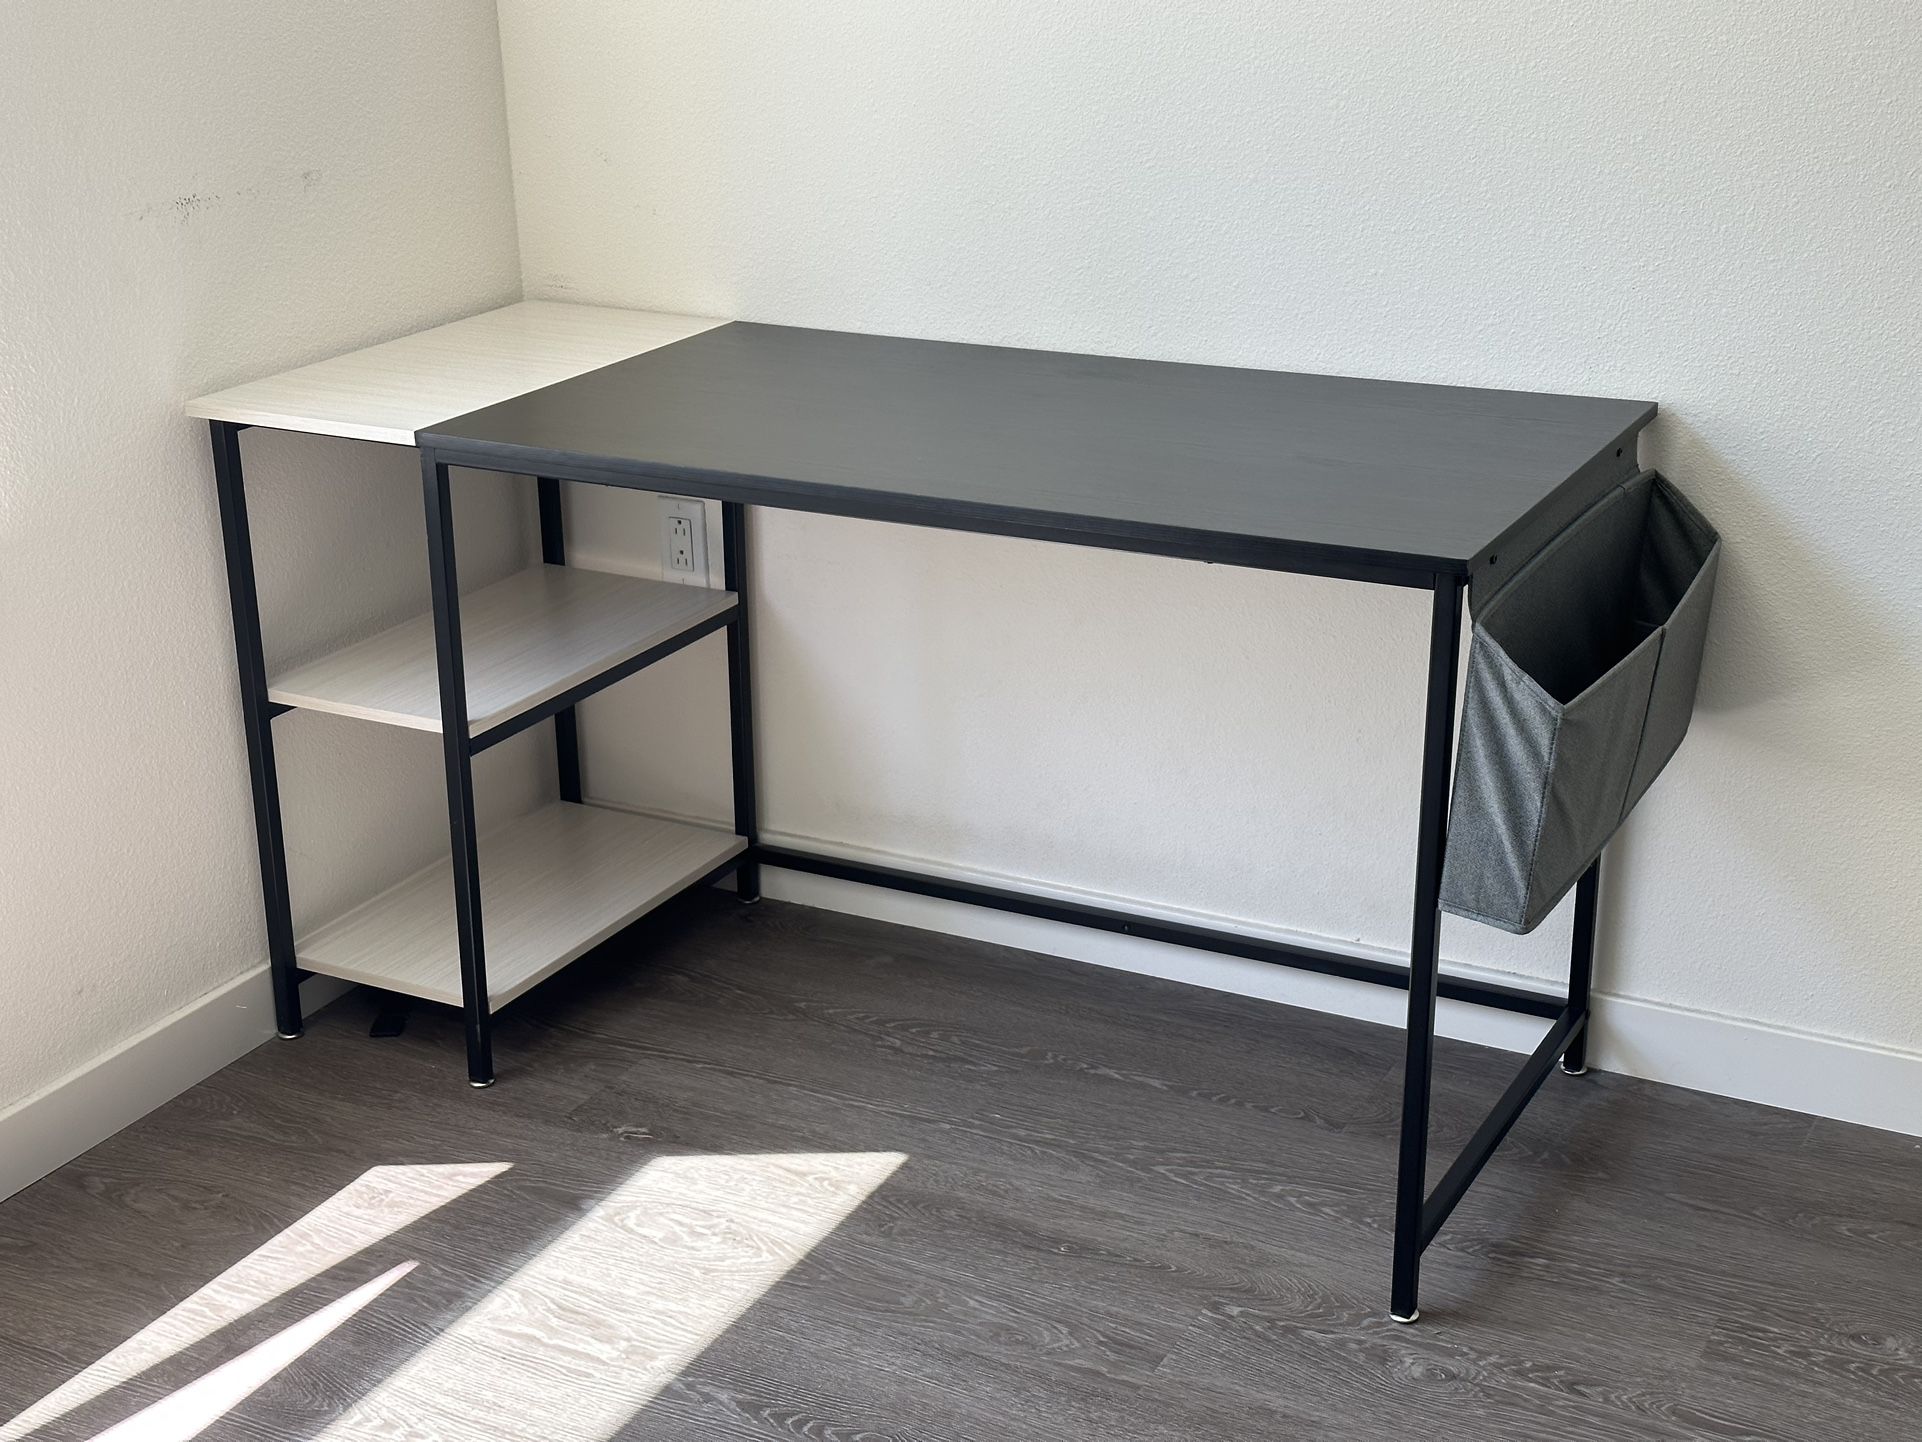 55” Desk For Study, Computer, Workstation